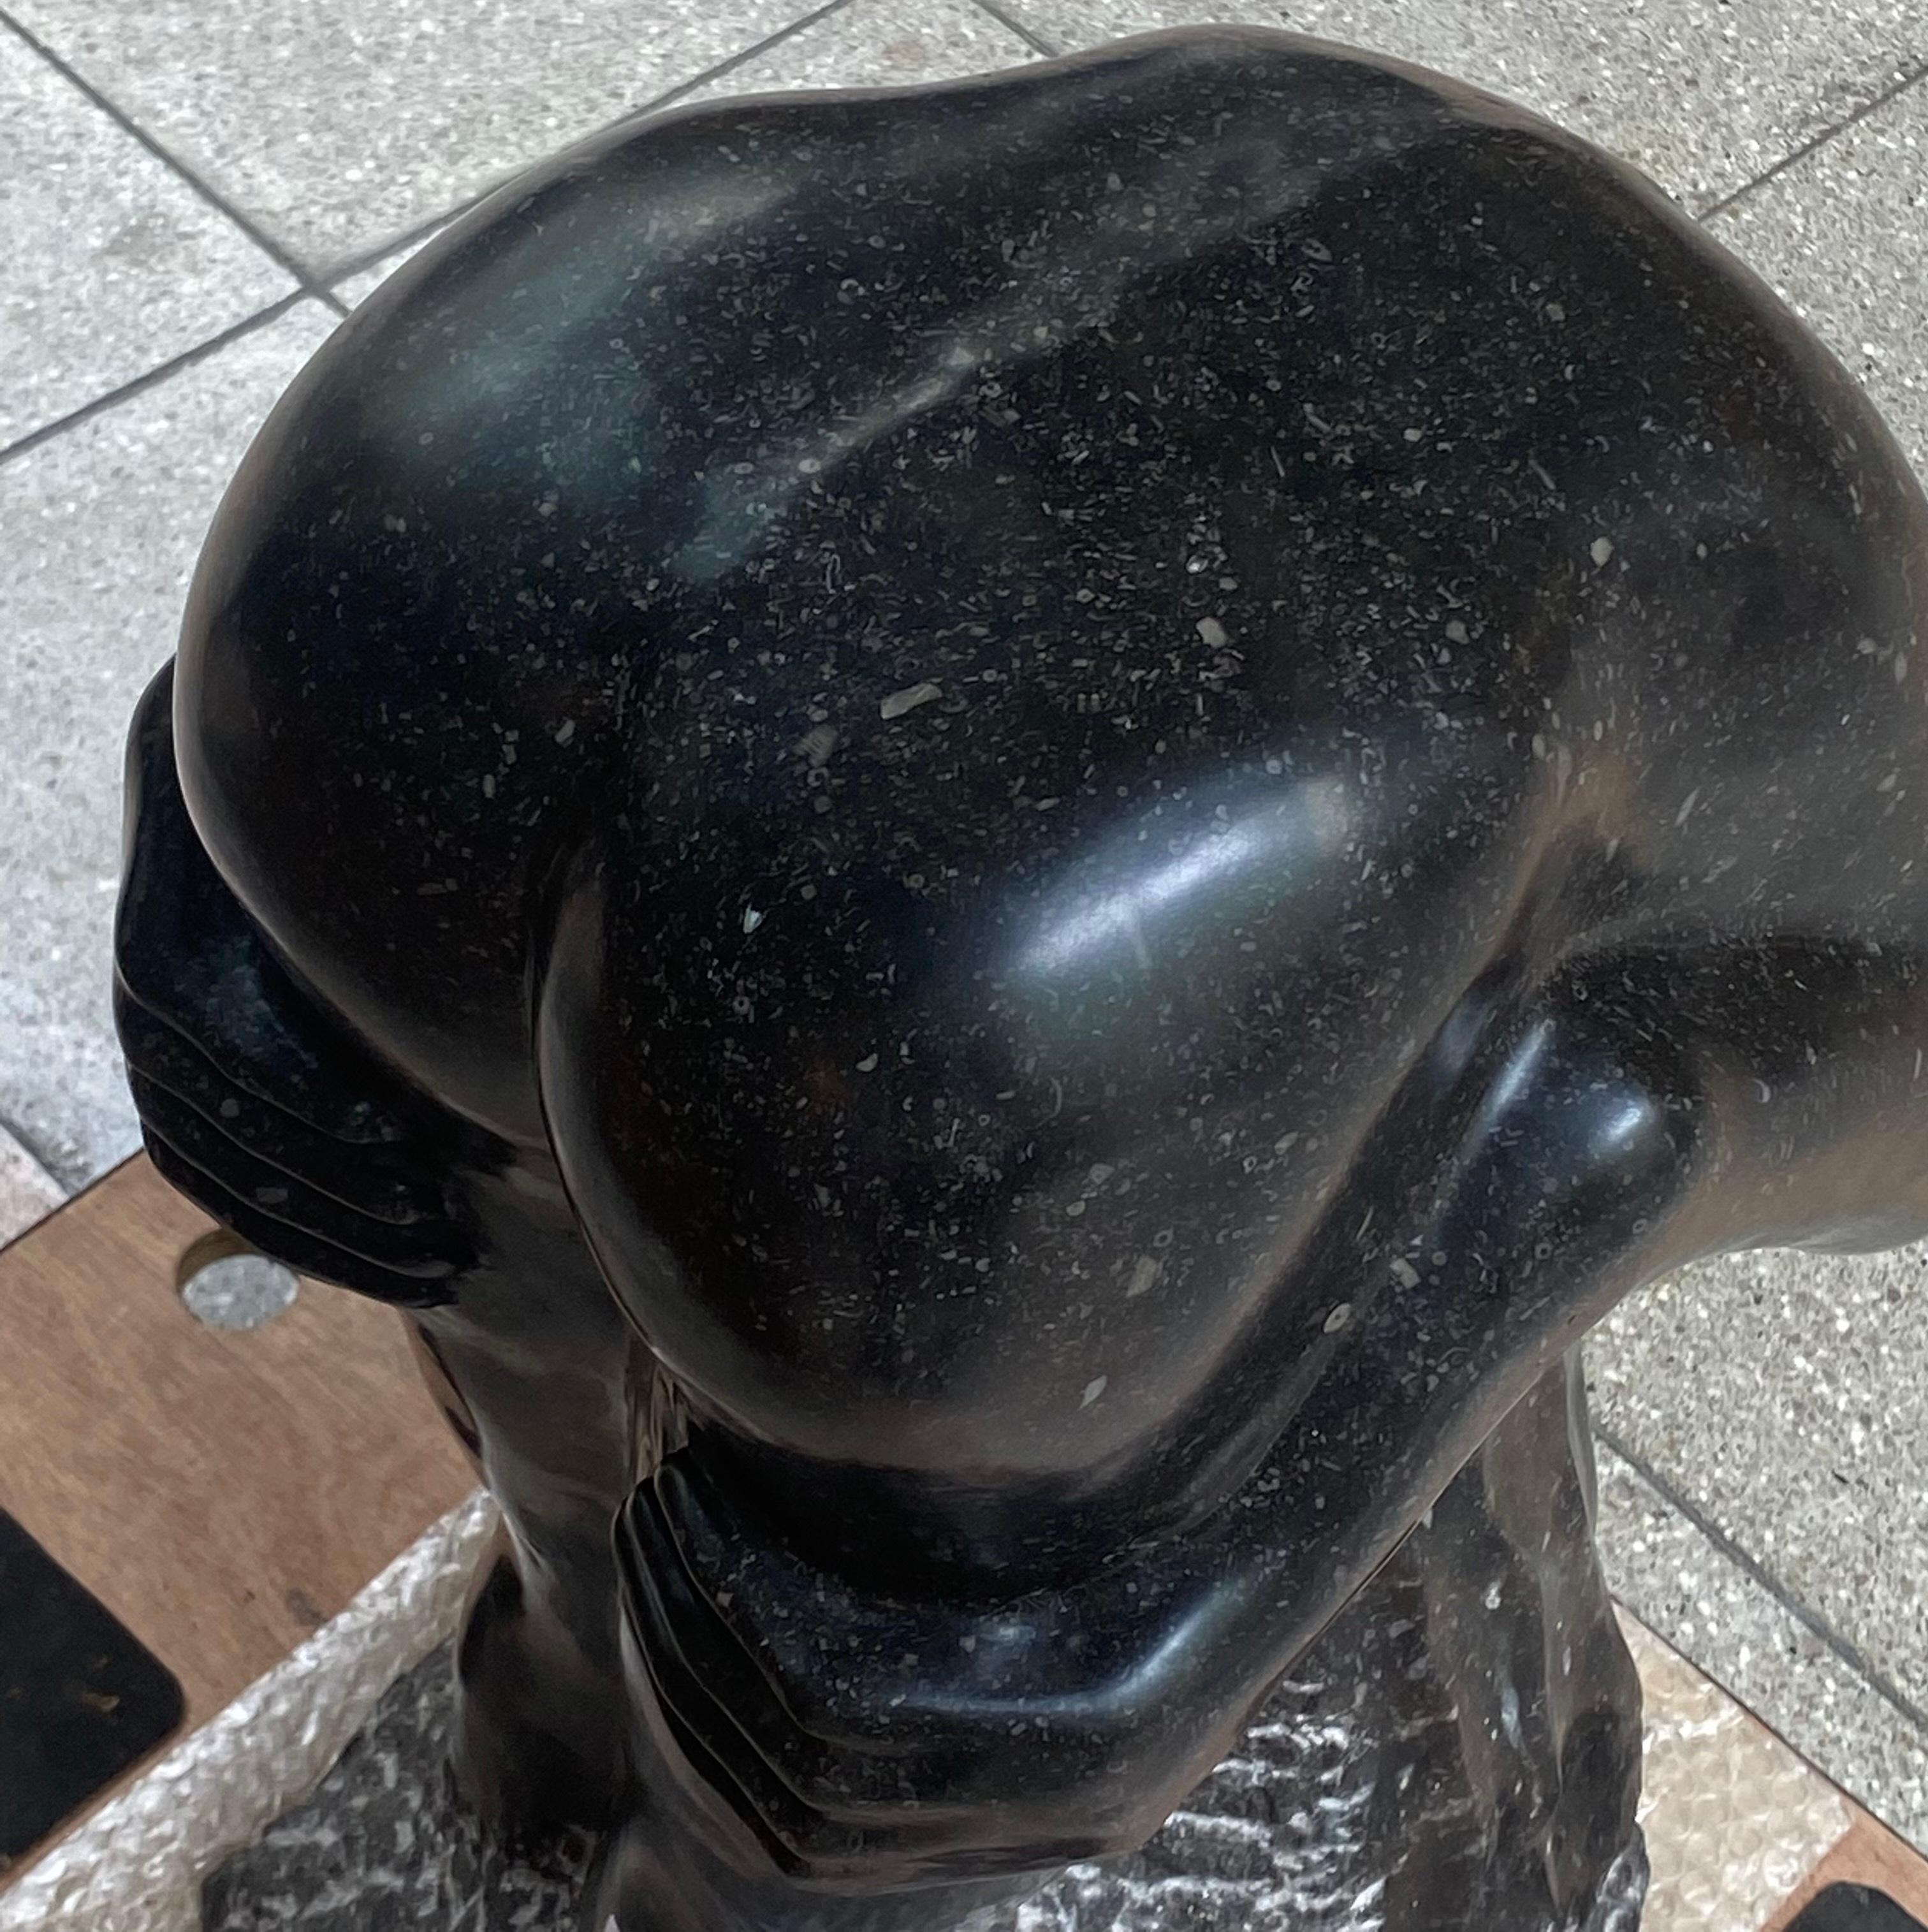 Sculpture de Bruno QUOILIN (XX) 
Nu féminin, sculpture en marbre noir 
H60 x L 33 x P 33 cm 
1990
Travail signé 
Réf : 4492/13
Prix : 1950